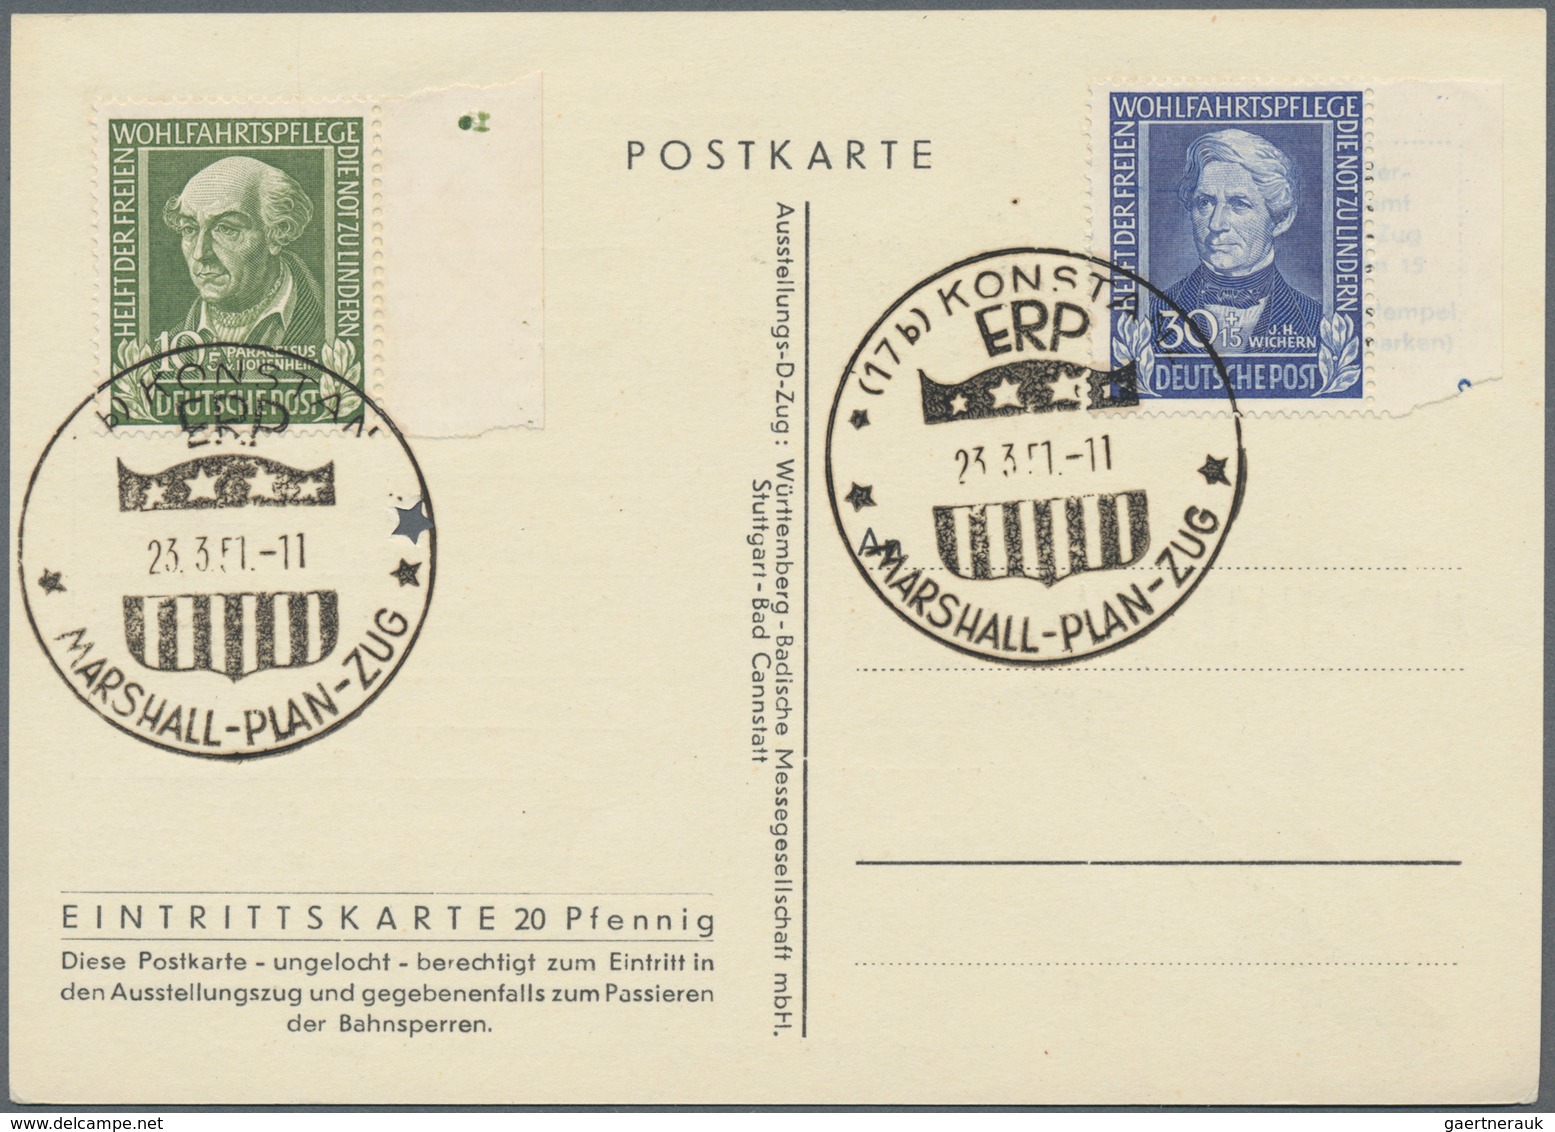 Deutschland nach 1945: 1946/1995, vielseitiger Posten von ca. 730 Briefen und Karten mit Hauptwert b